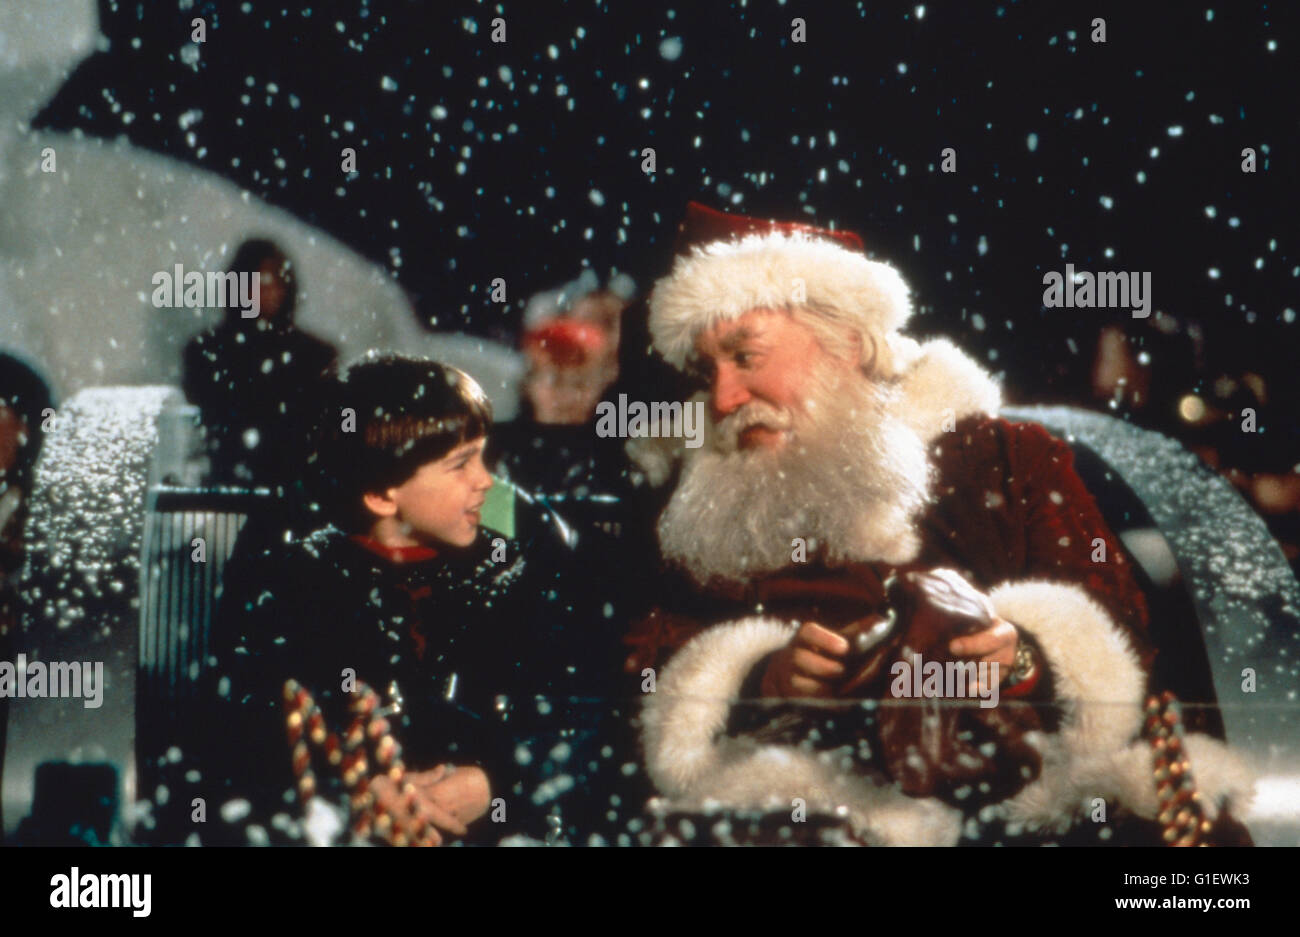 The Santa Clause, aka: Santa Clause - Eine schöne Bescherung, USA 1994, Regie: John Pasquin, Darsteller: Eric Lloyd, Tim Allen Stock Photo